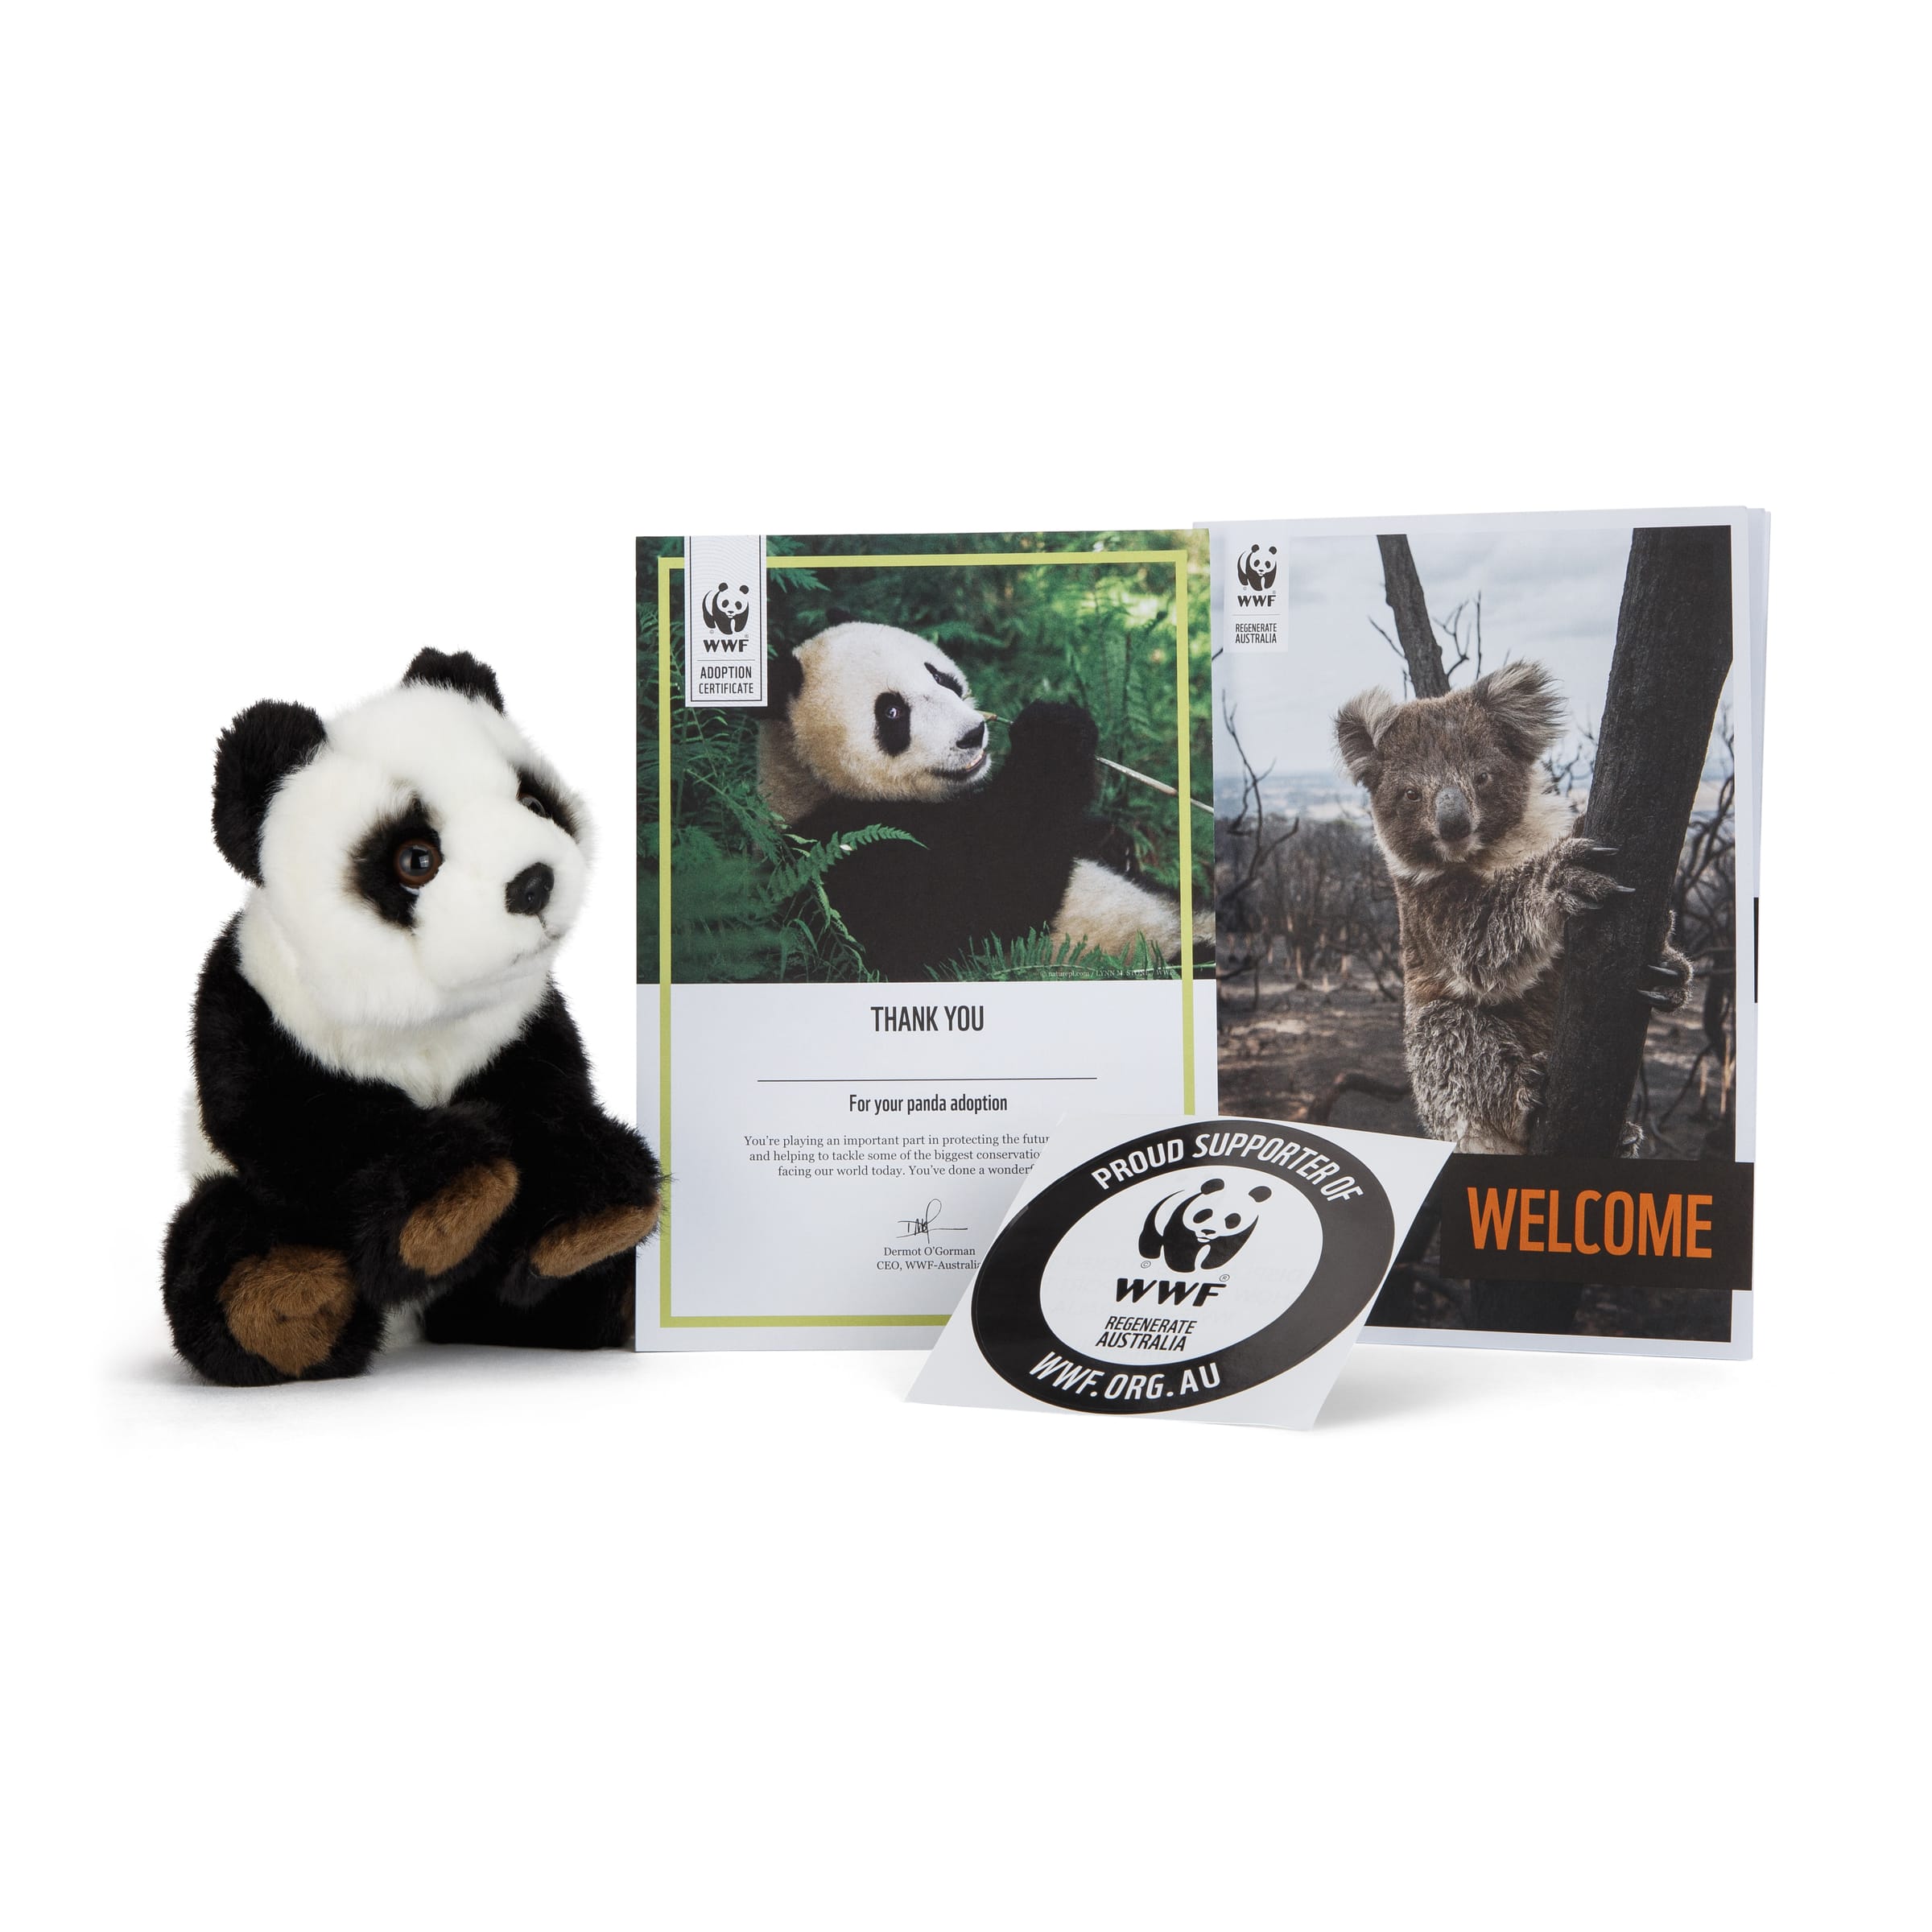 Giant panda  WWF Australia